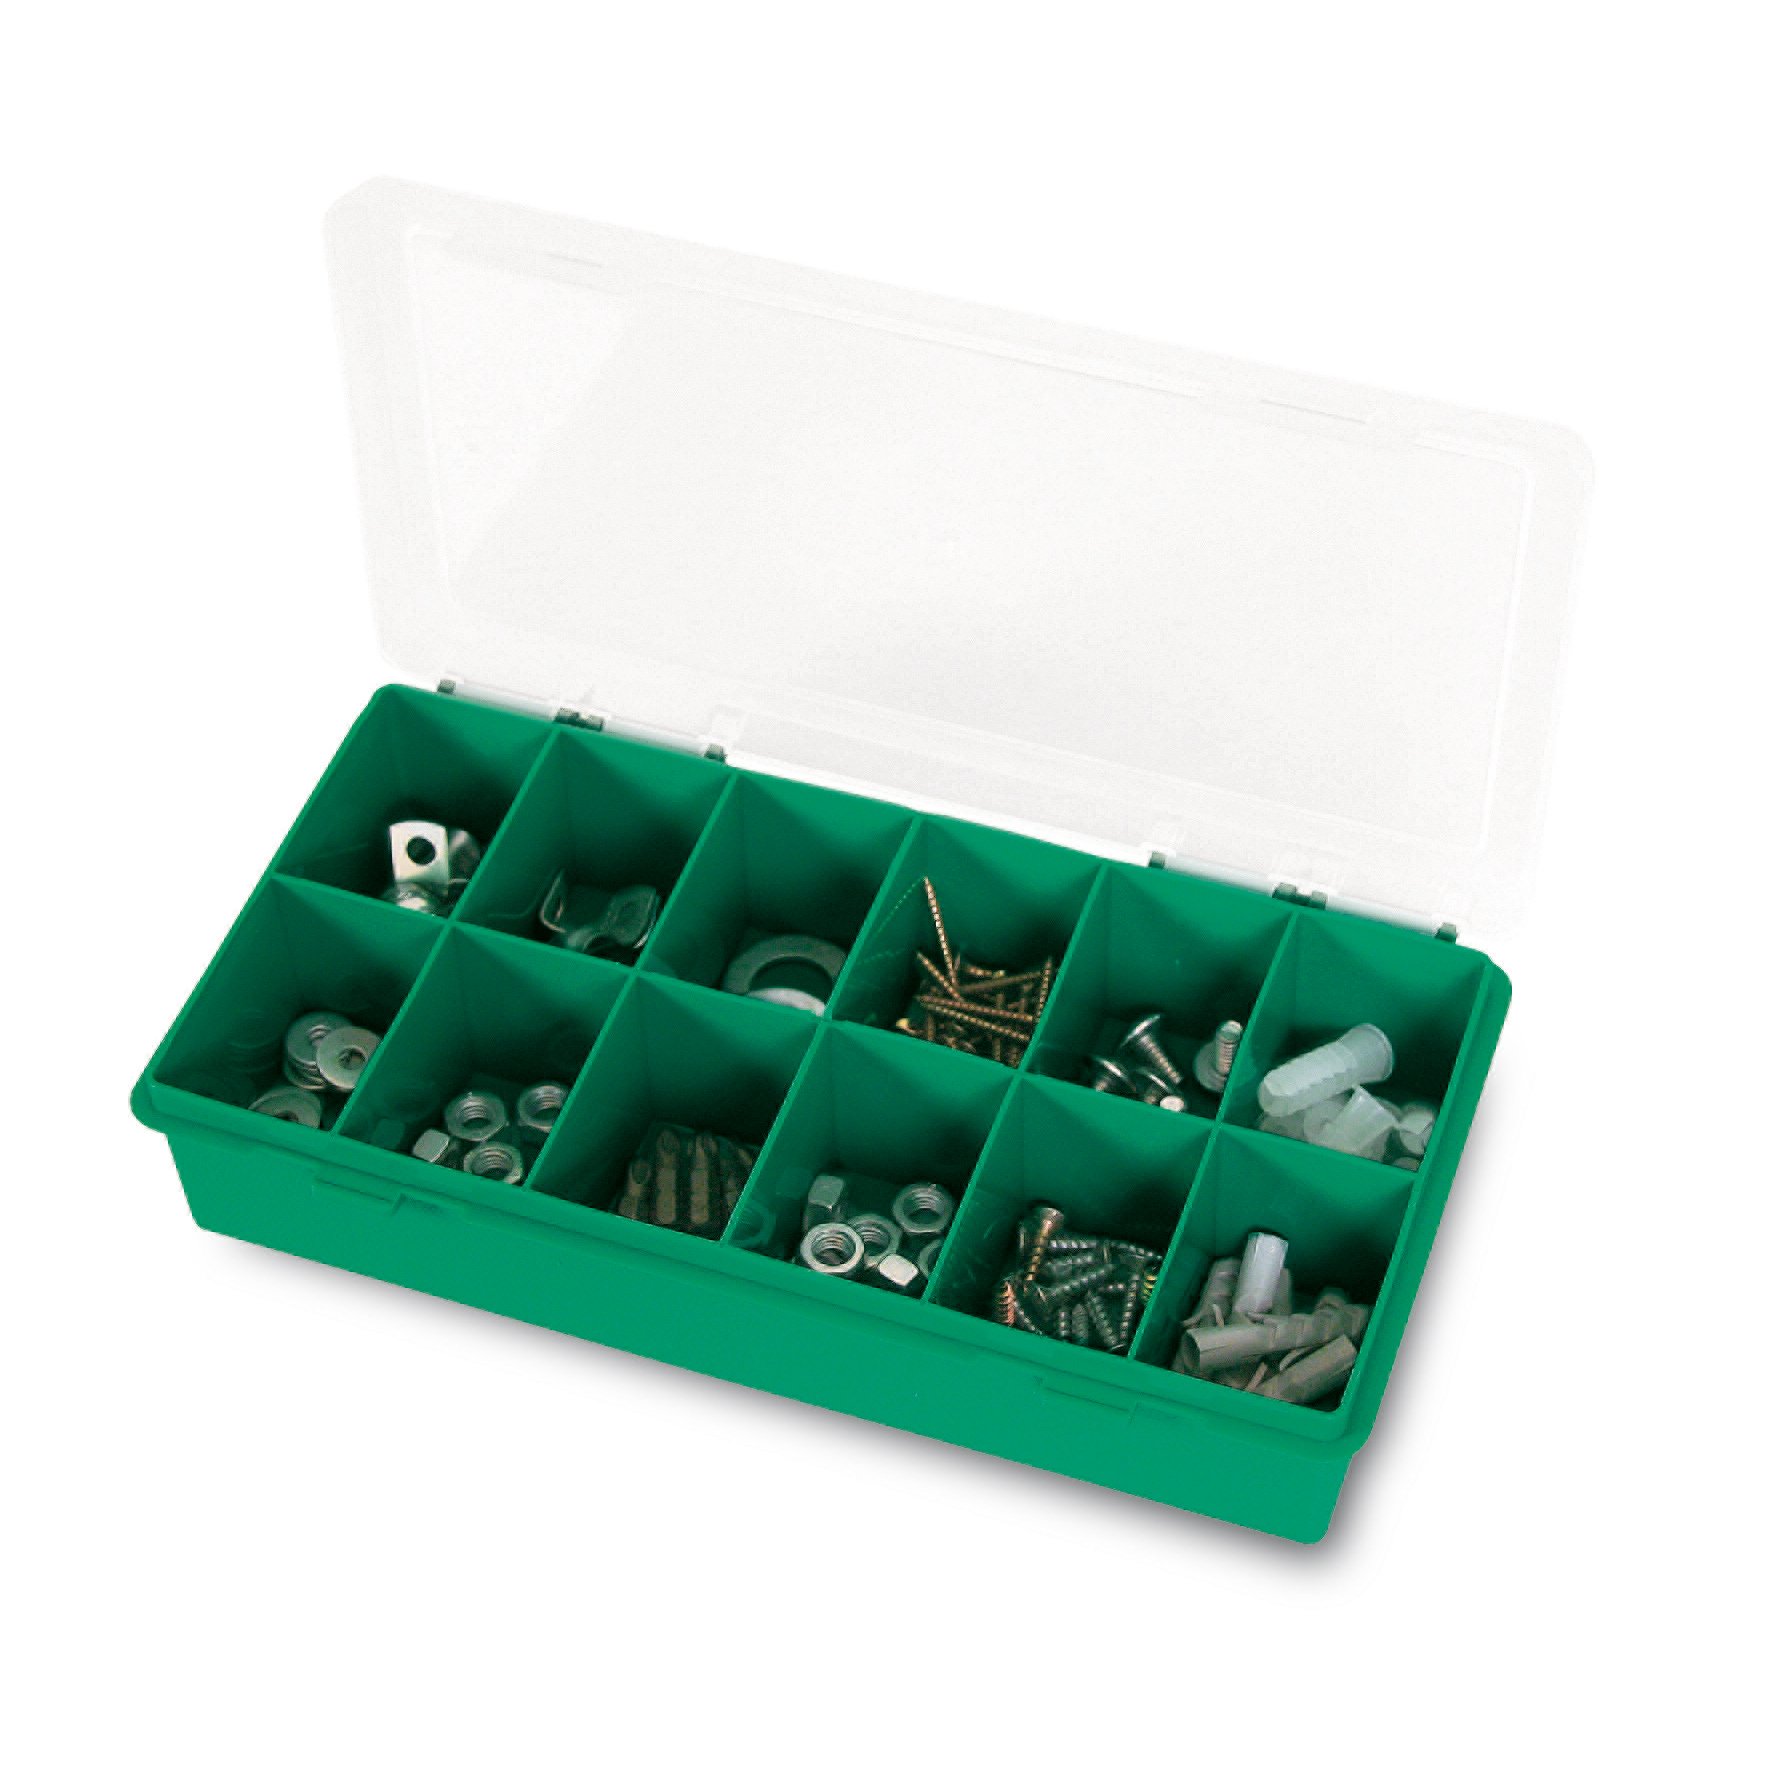 Органайзер Tayg Box 11-12 Estuche, для хранения мелких предметов, 25х14х5,4 см, зеленый (050107) - фото 1